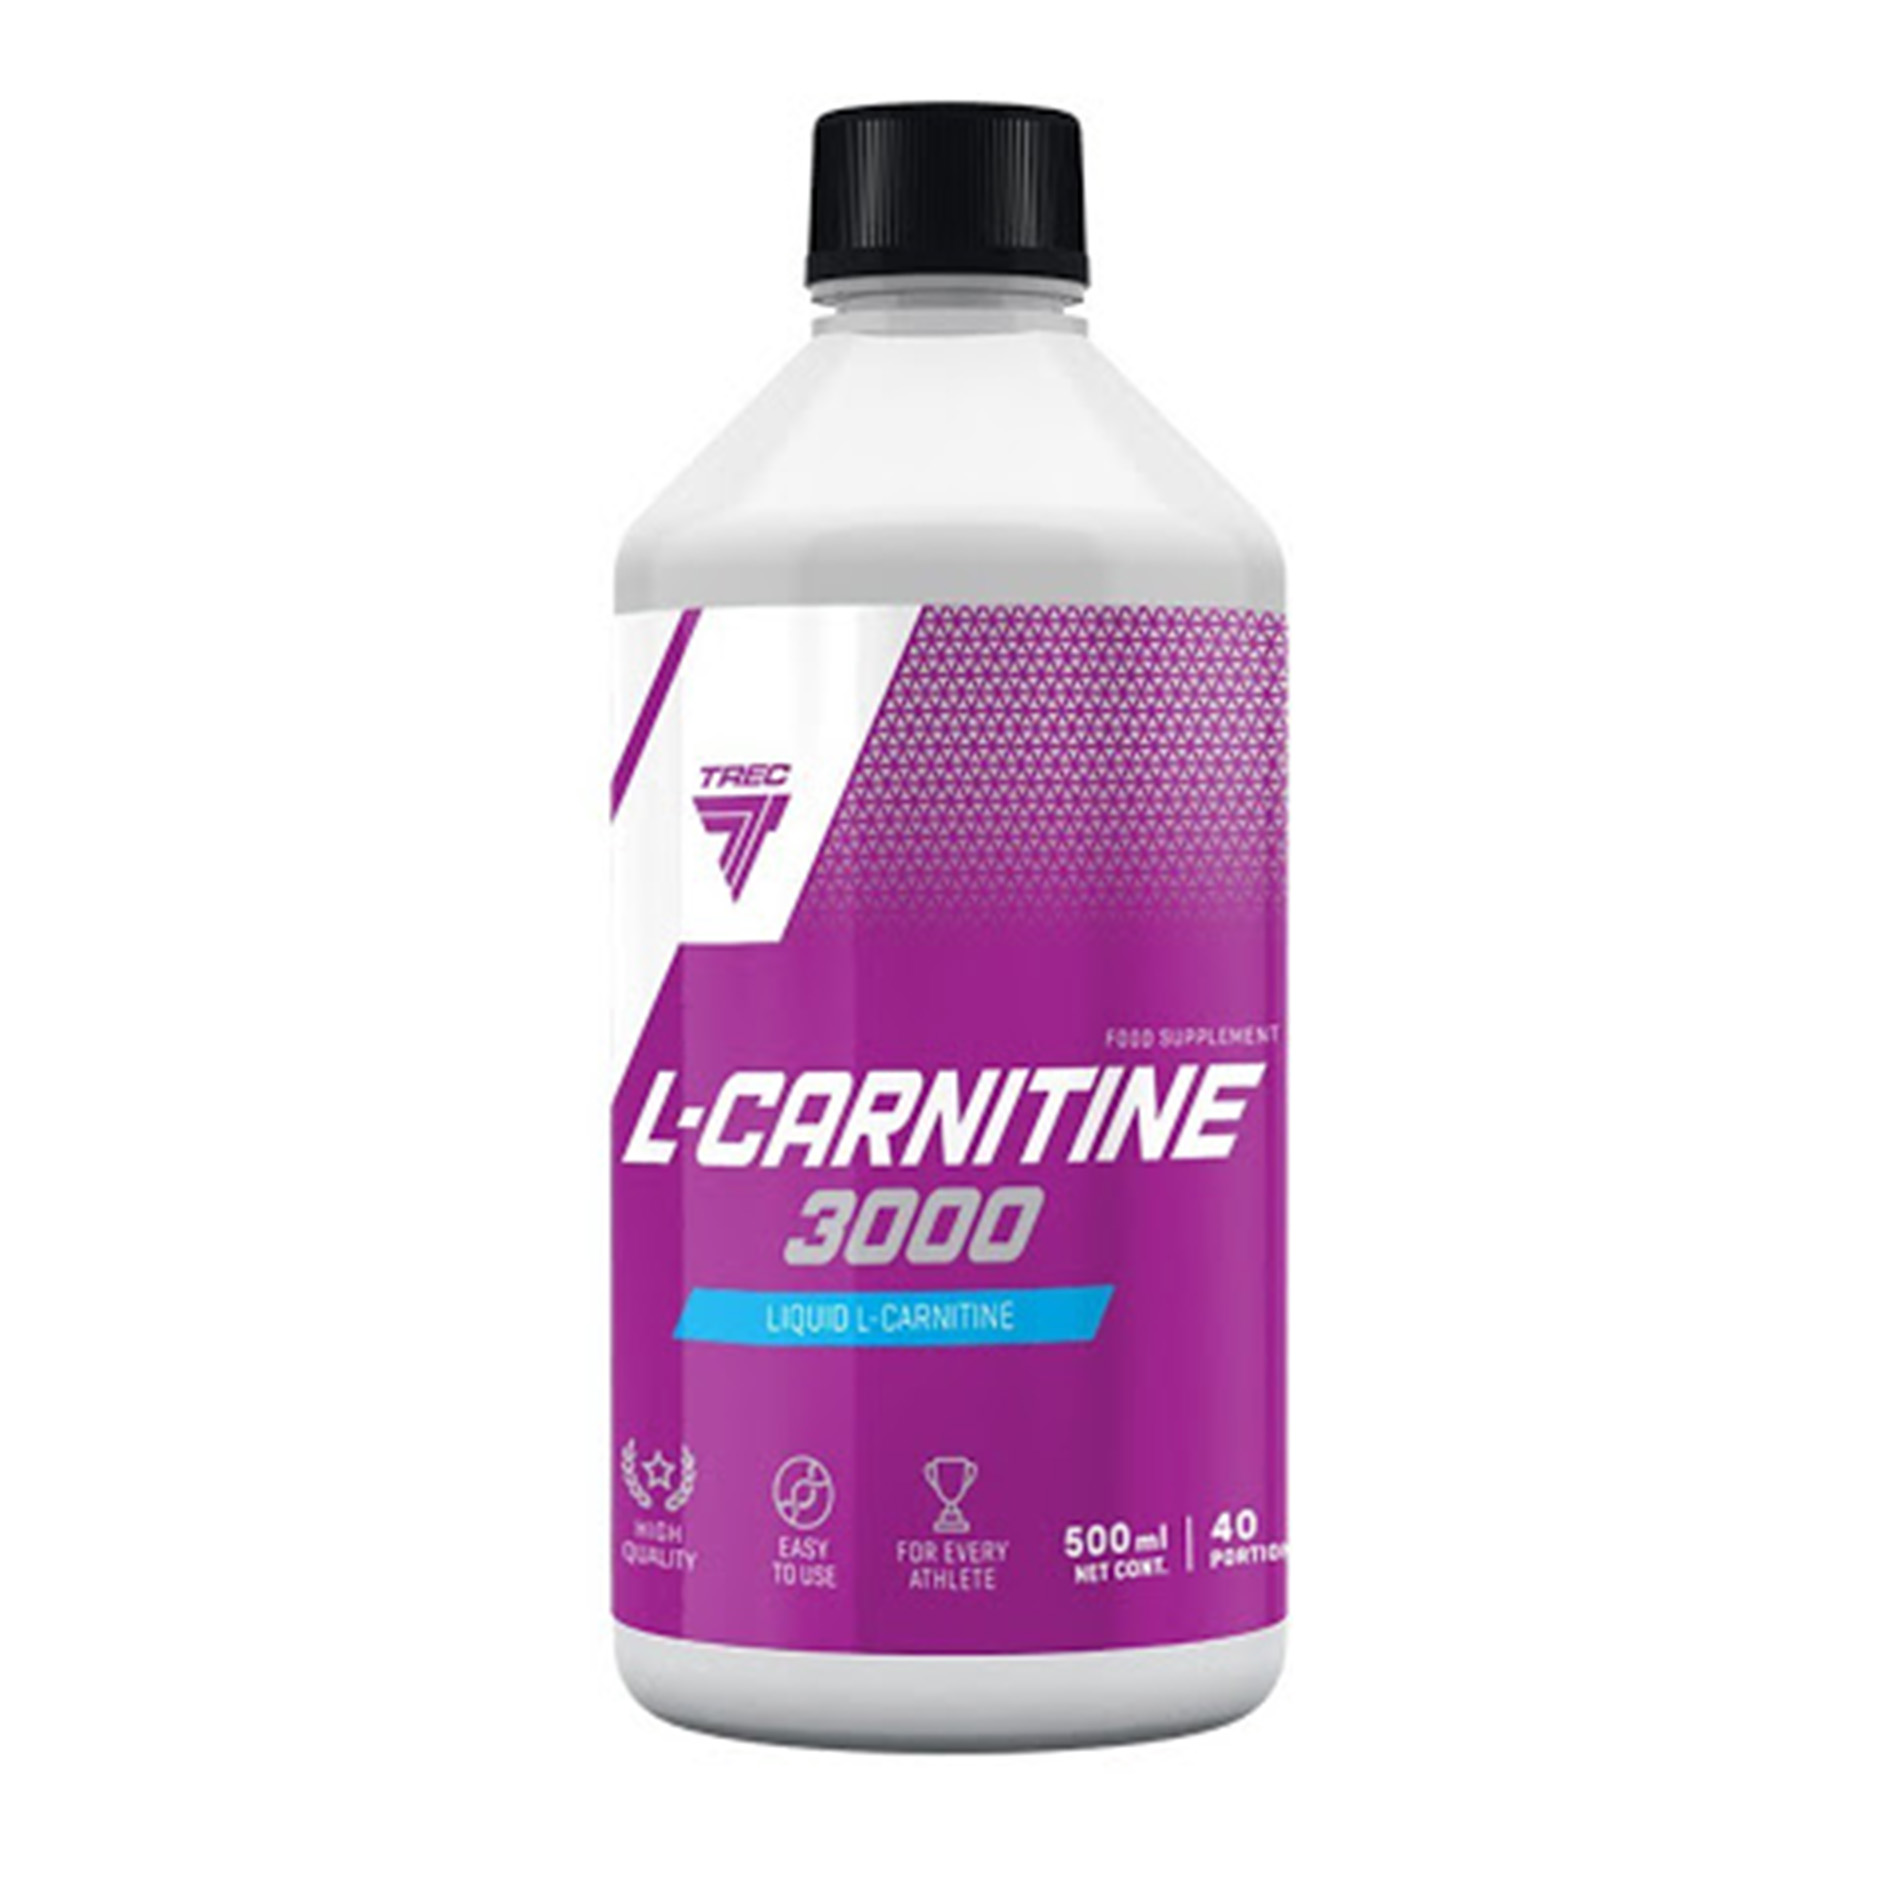 Л карнитин жидкий купить. L-Carnitine 3000. Liquid l-Carnitine 3000. L-карнитин trec Nutrition. Trec Nutrition l-карнитин 3000.